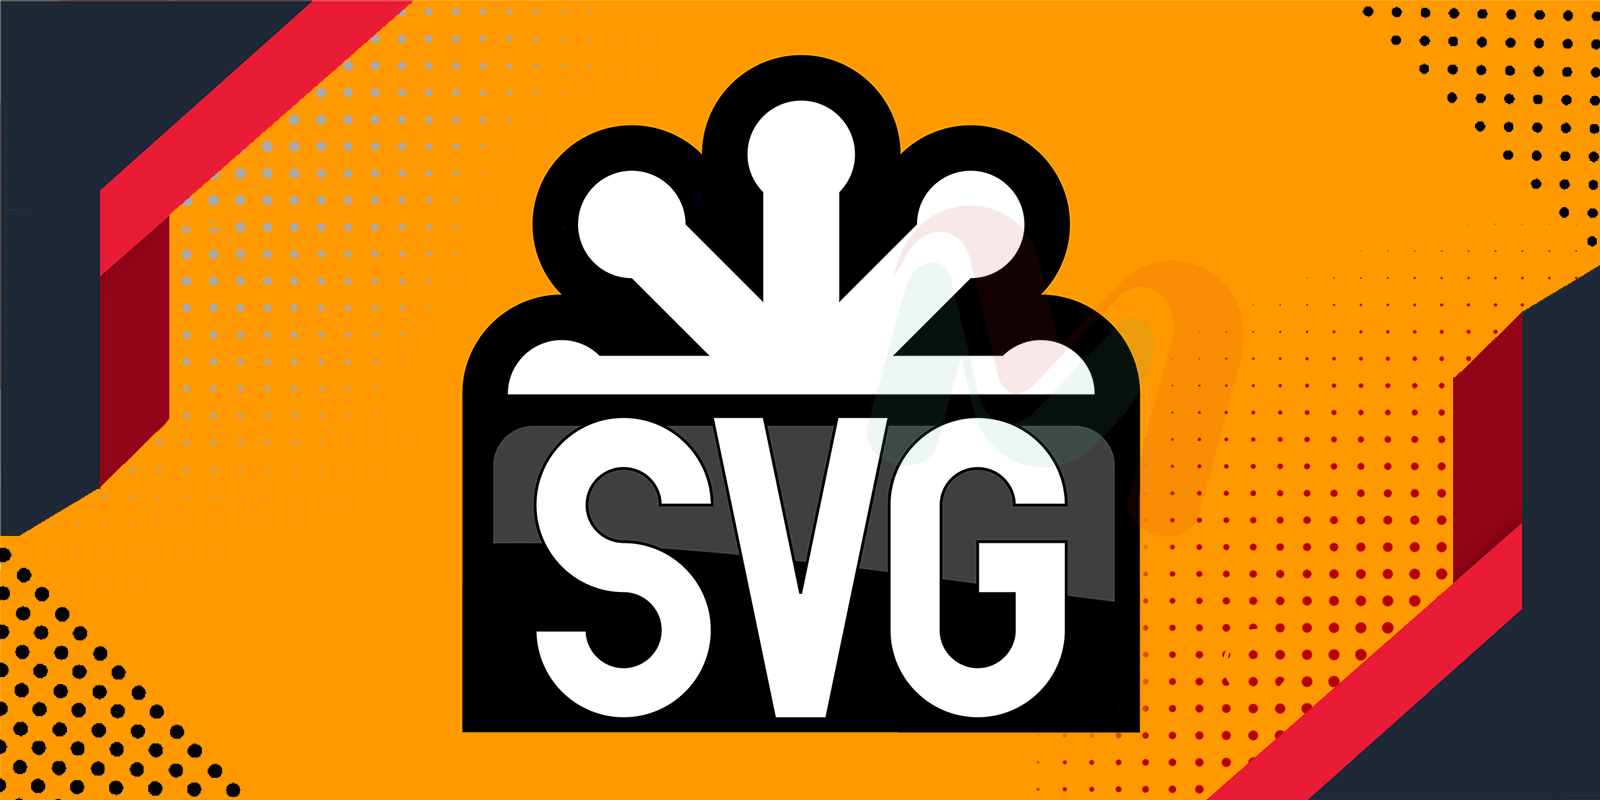 تركيب شعار SVG لمدونة بلوجر